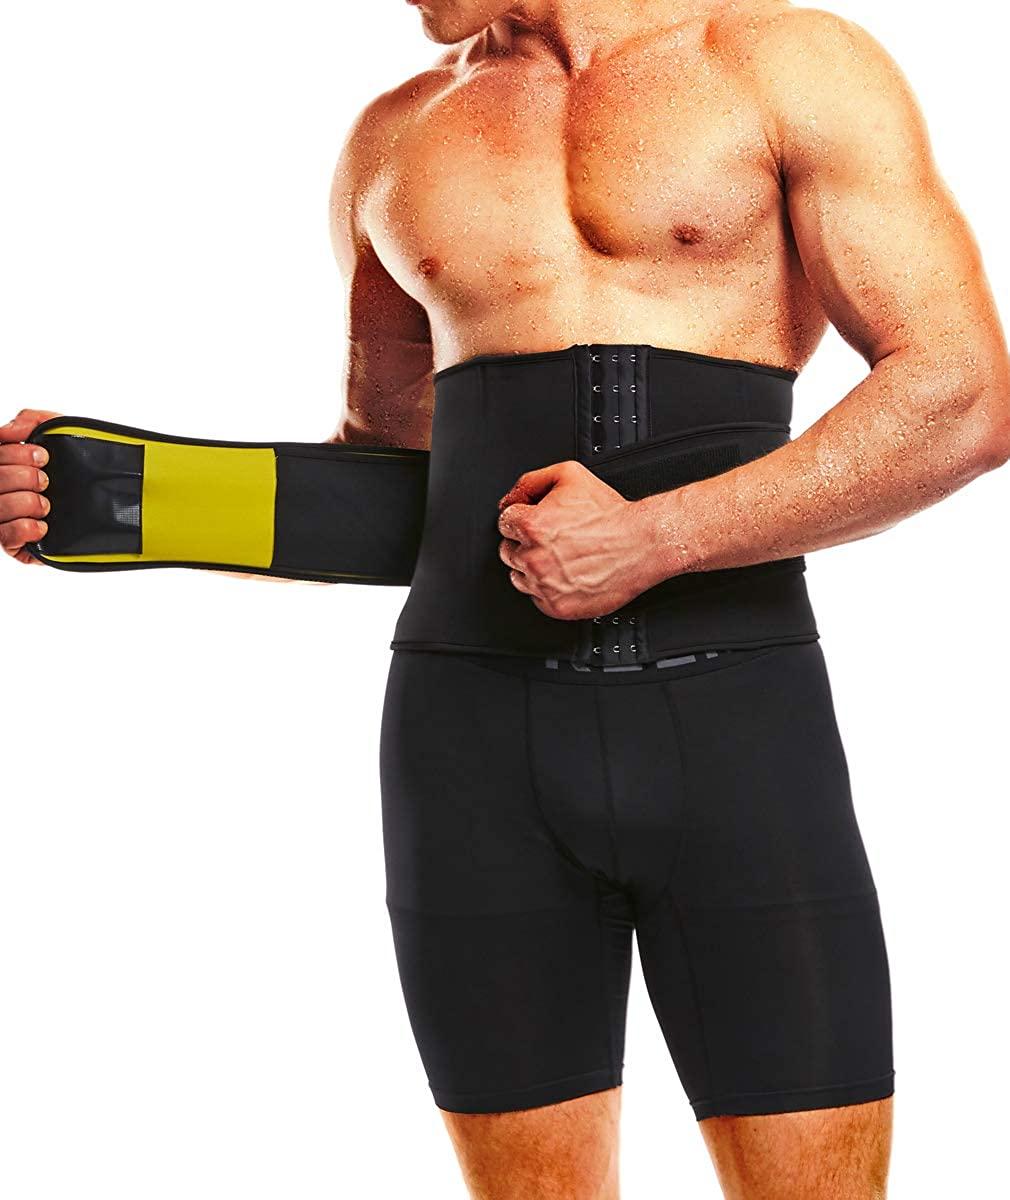 Men Waist Trimmer Belt Wrap Trainer Hot Swear Shirt Corset Body